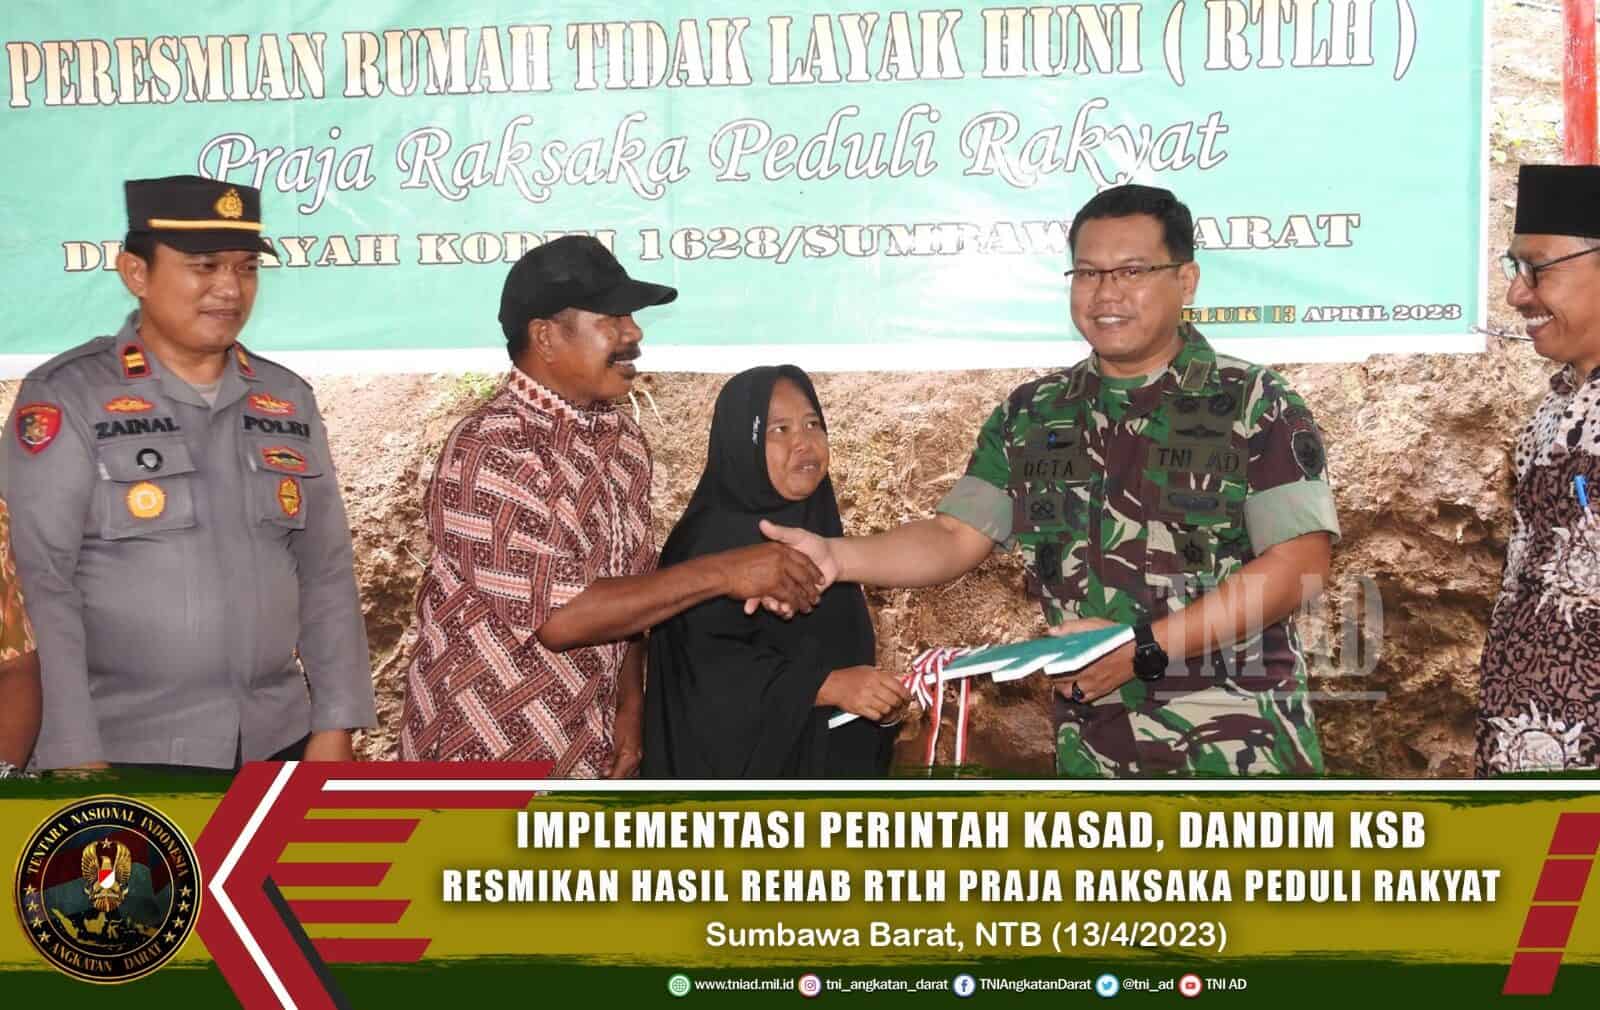 Implementasi Perintah Kasad, Dandim KSB Resmikan Hasil Rehab RTLH Praja Raksaka Peduli Rakyat